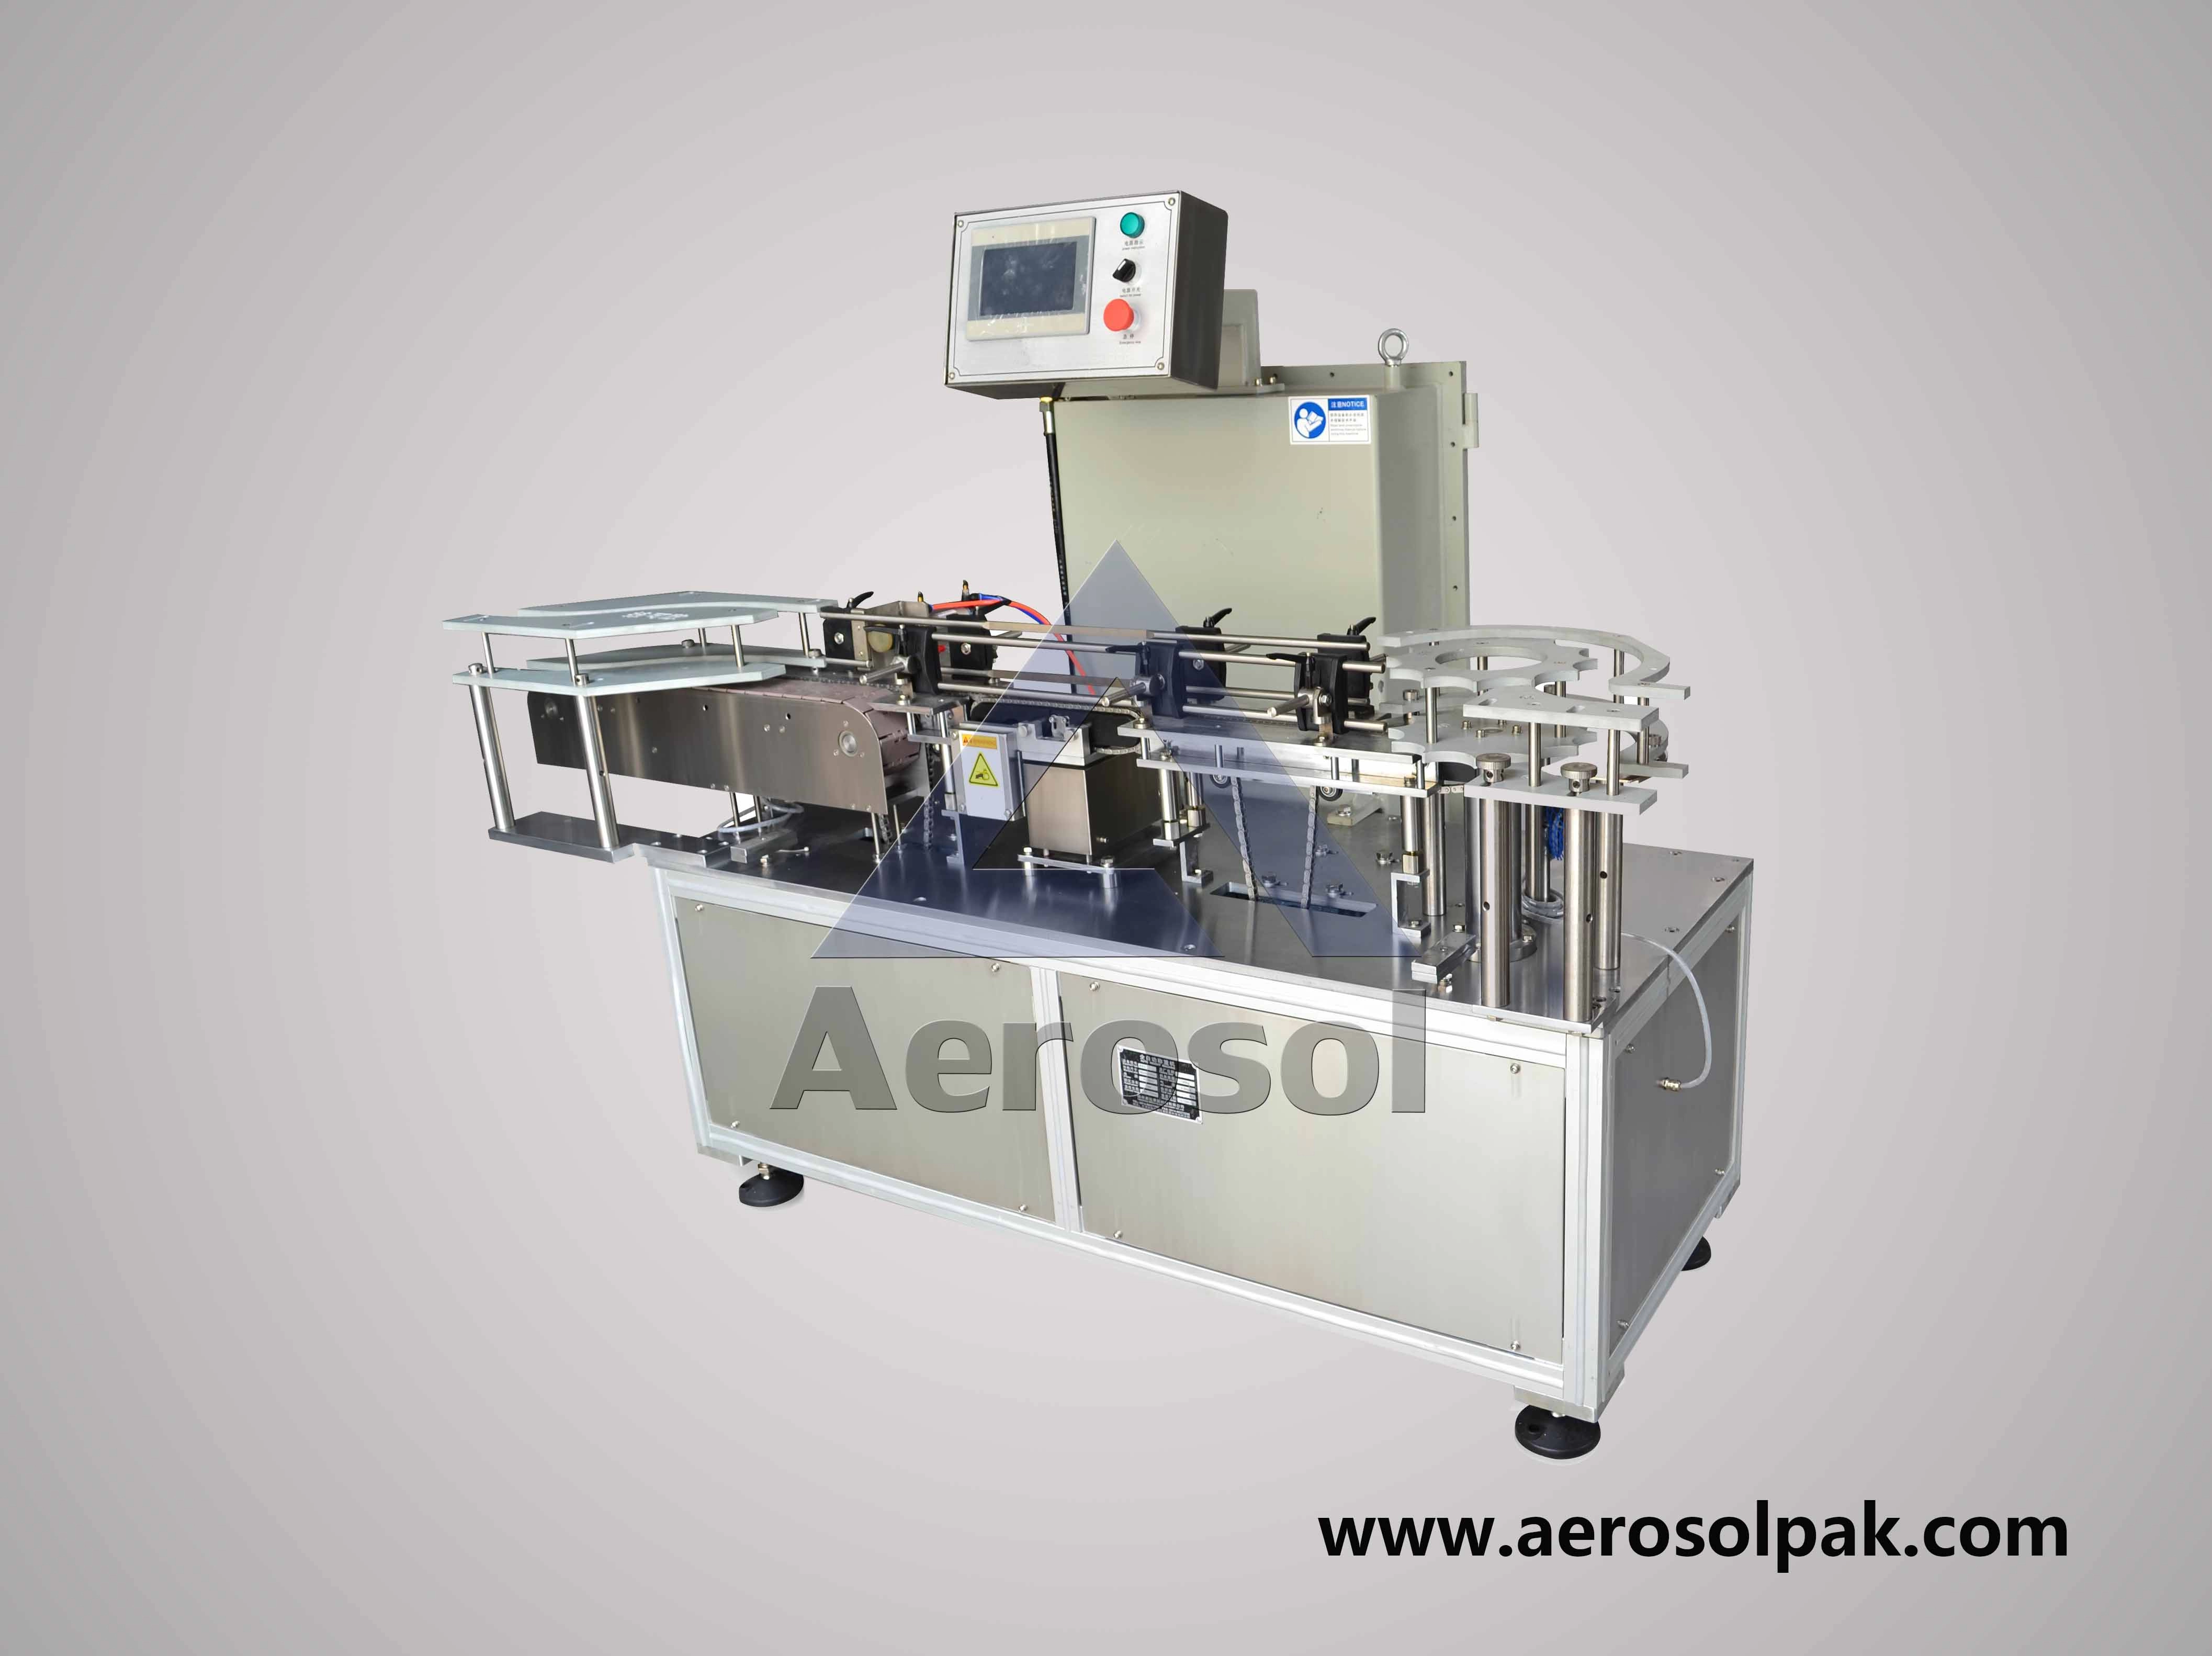 AWC-80 Aerosol สามารถตรวจสอบน้ำหนักบนน้ำหนักบนน้ำหนักบรรทุกได้